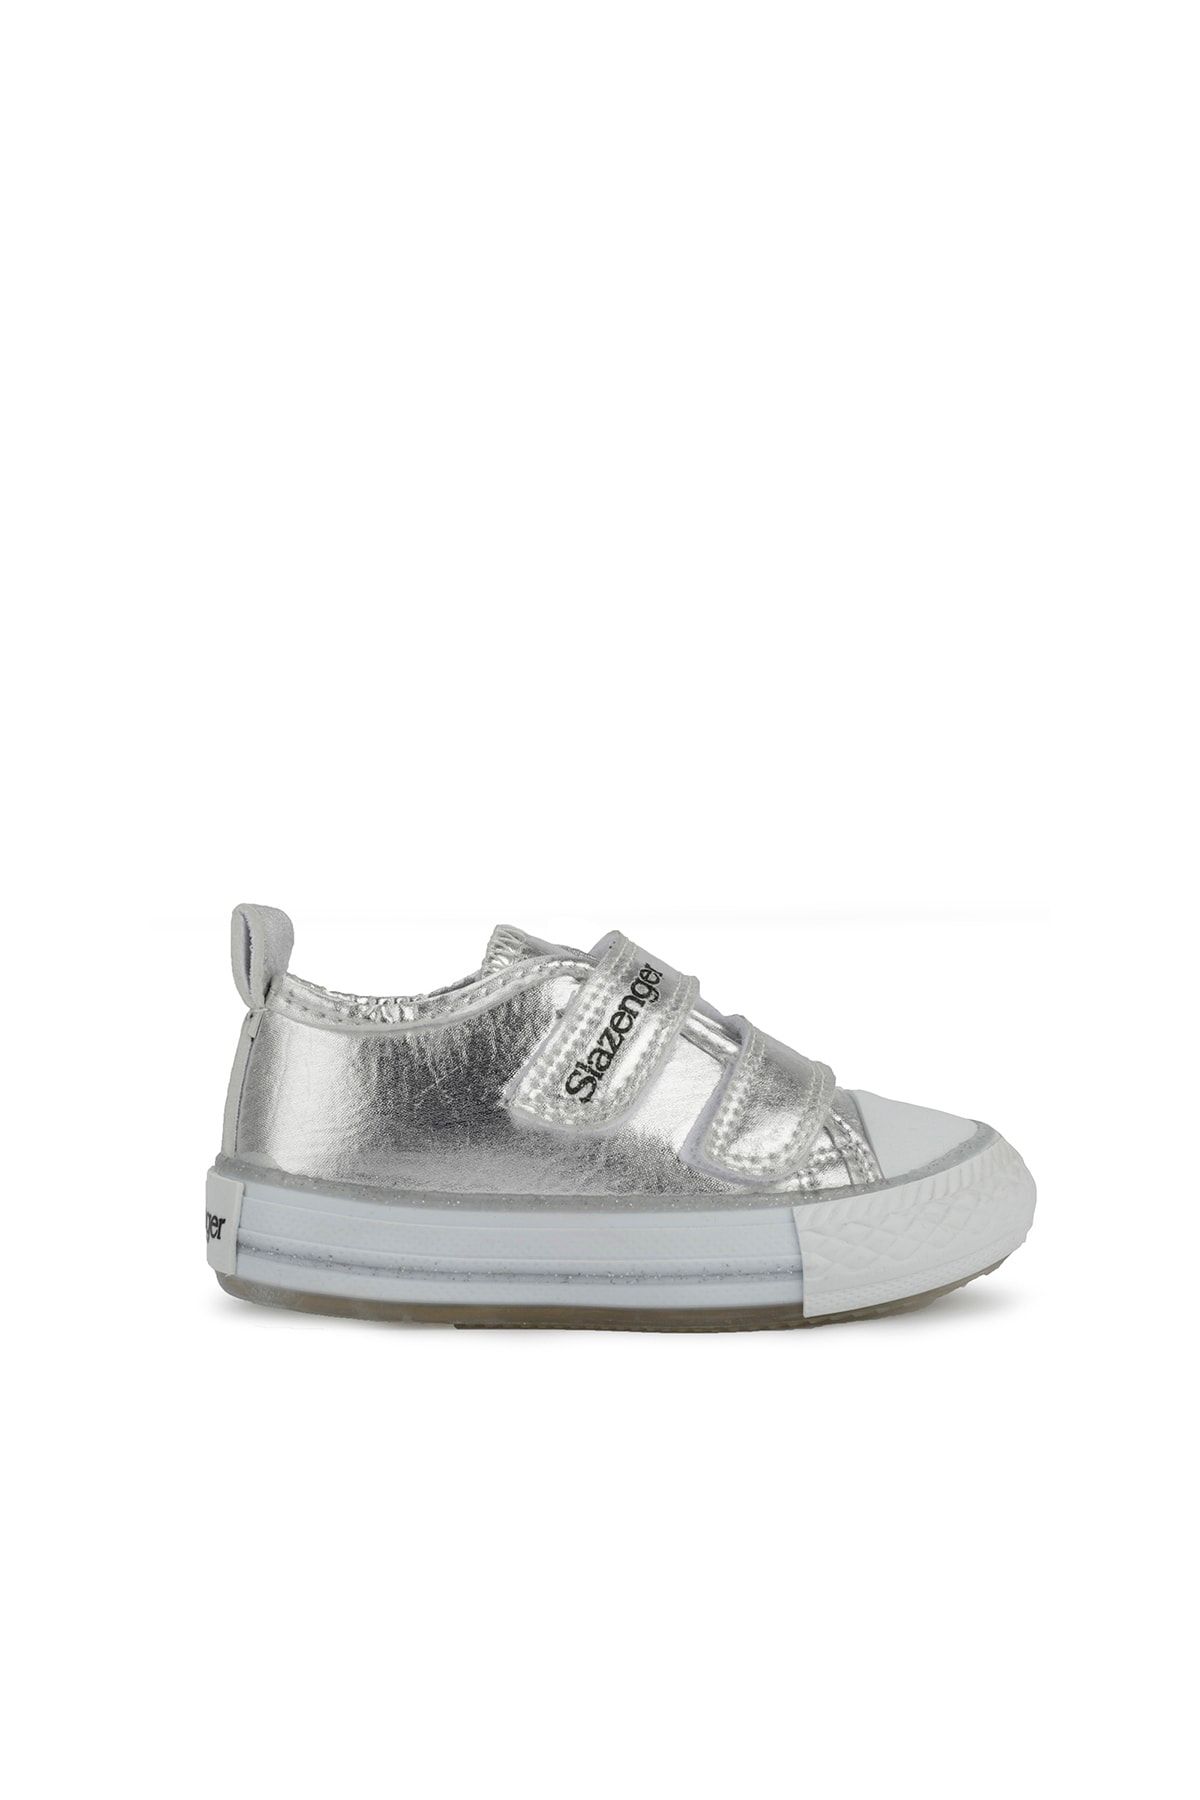 Slazenger Leon Sneaker Çocuk Ayakkabı Gri Sa11lb013